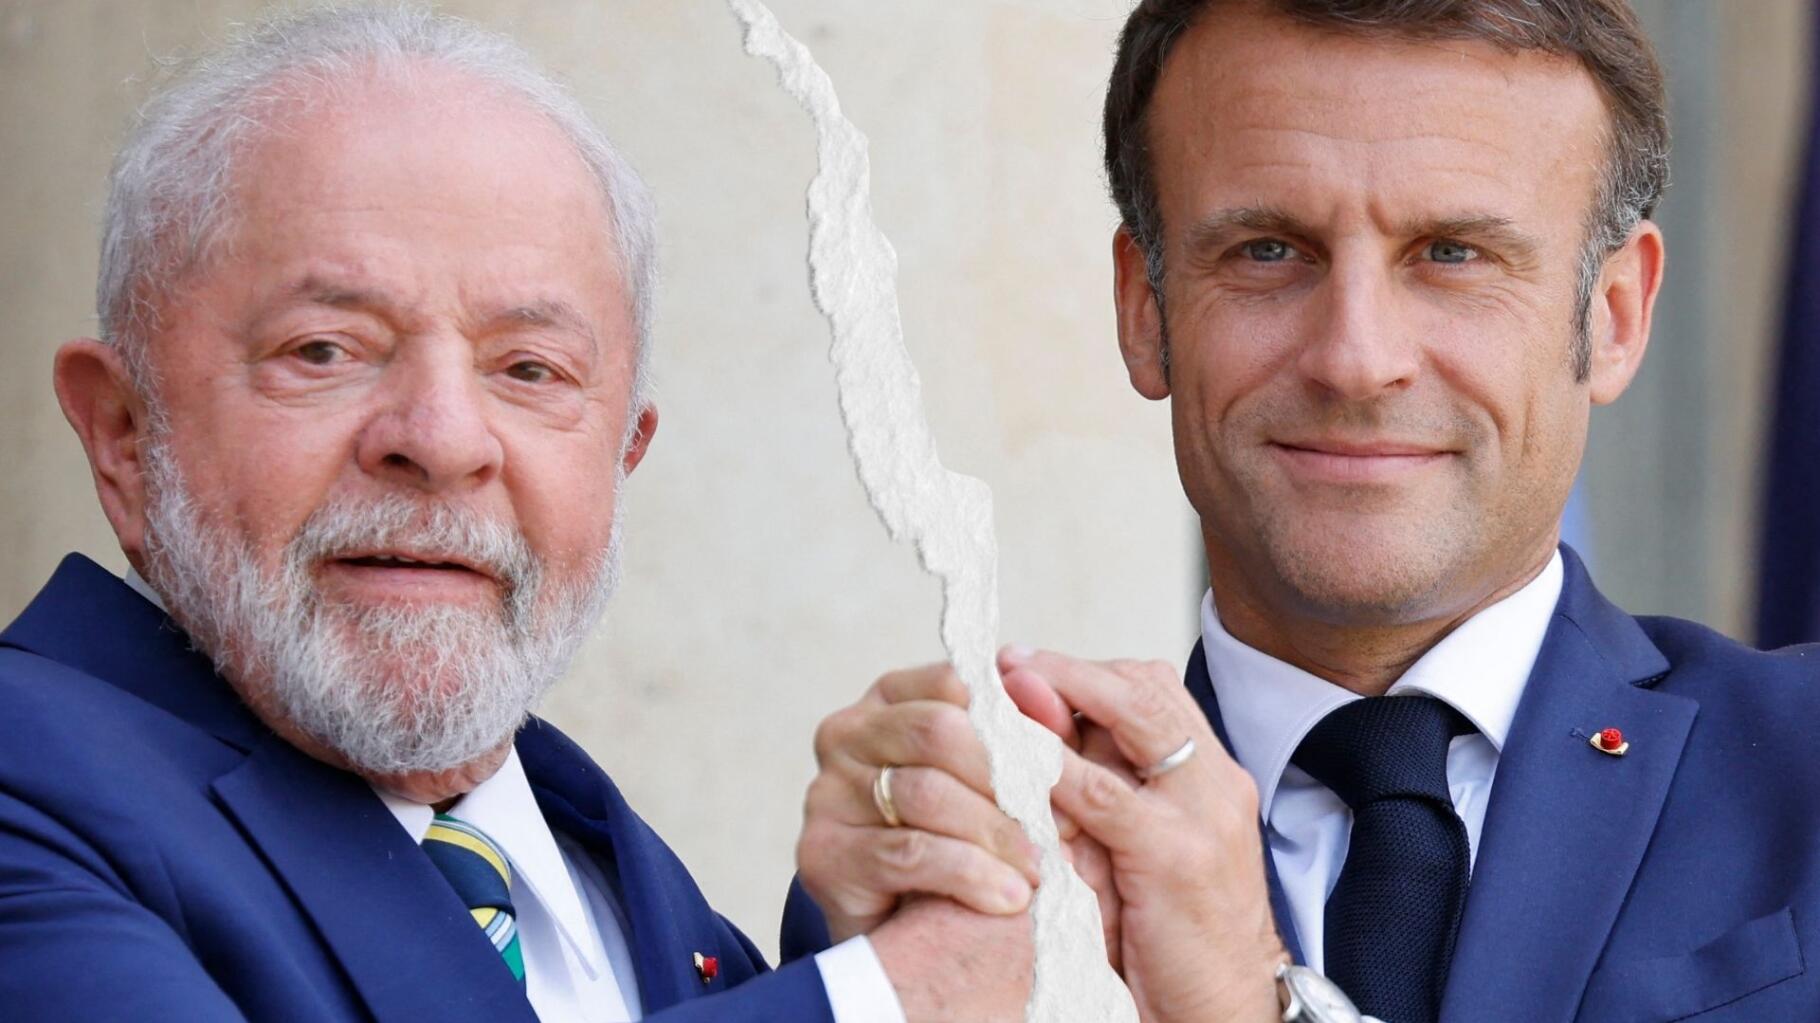 ¿Dos presidentes diametralmente opuestos, Macron y Lula?